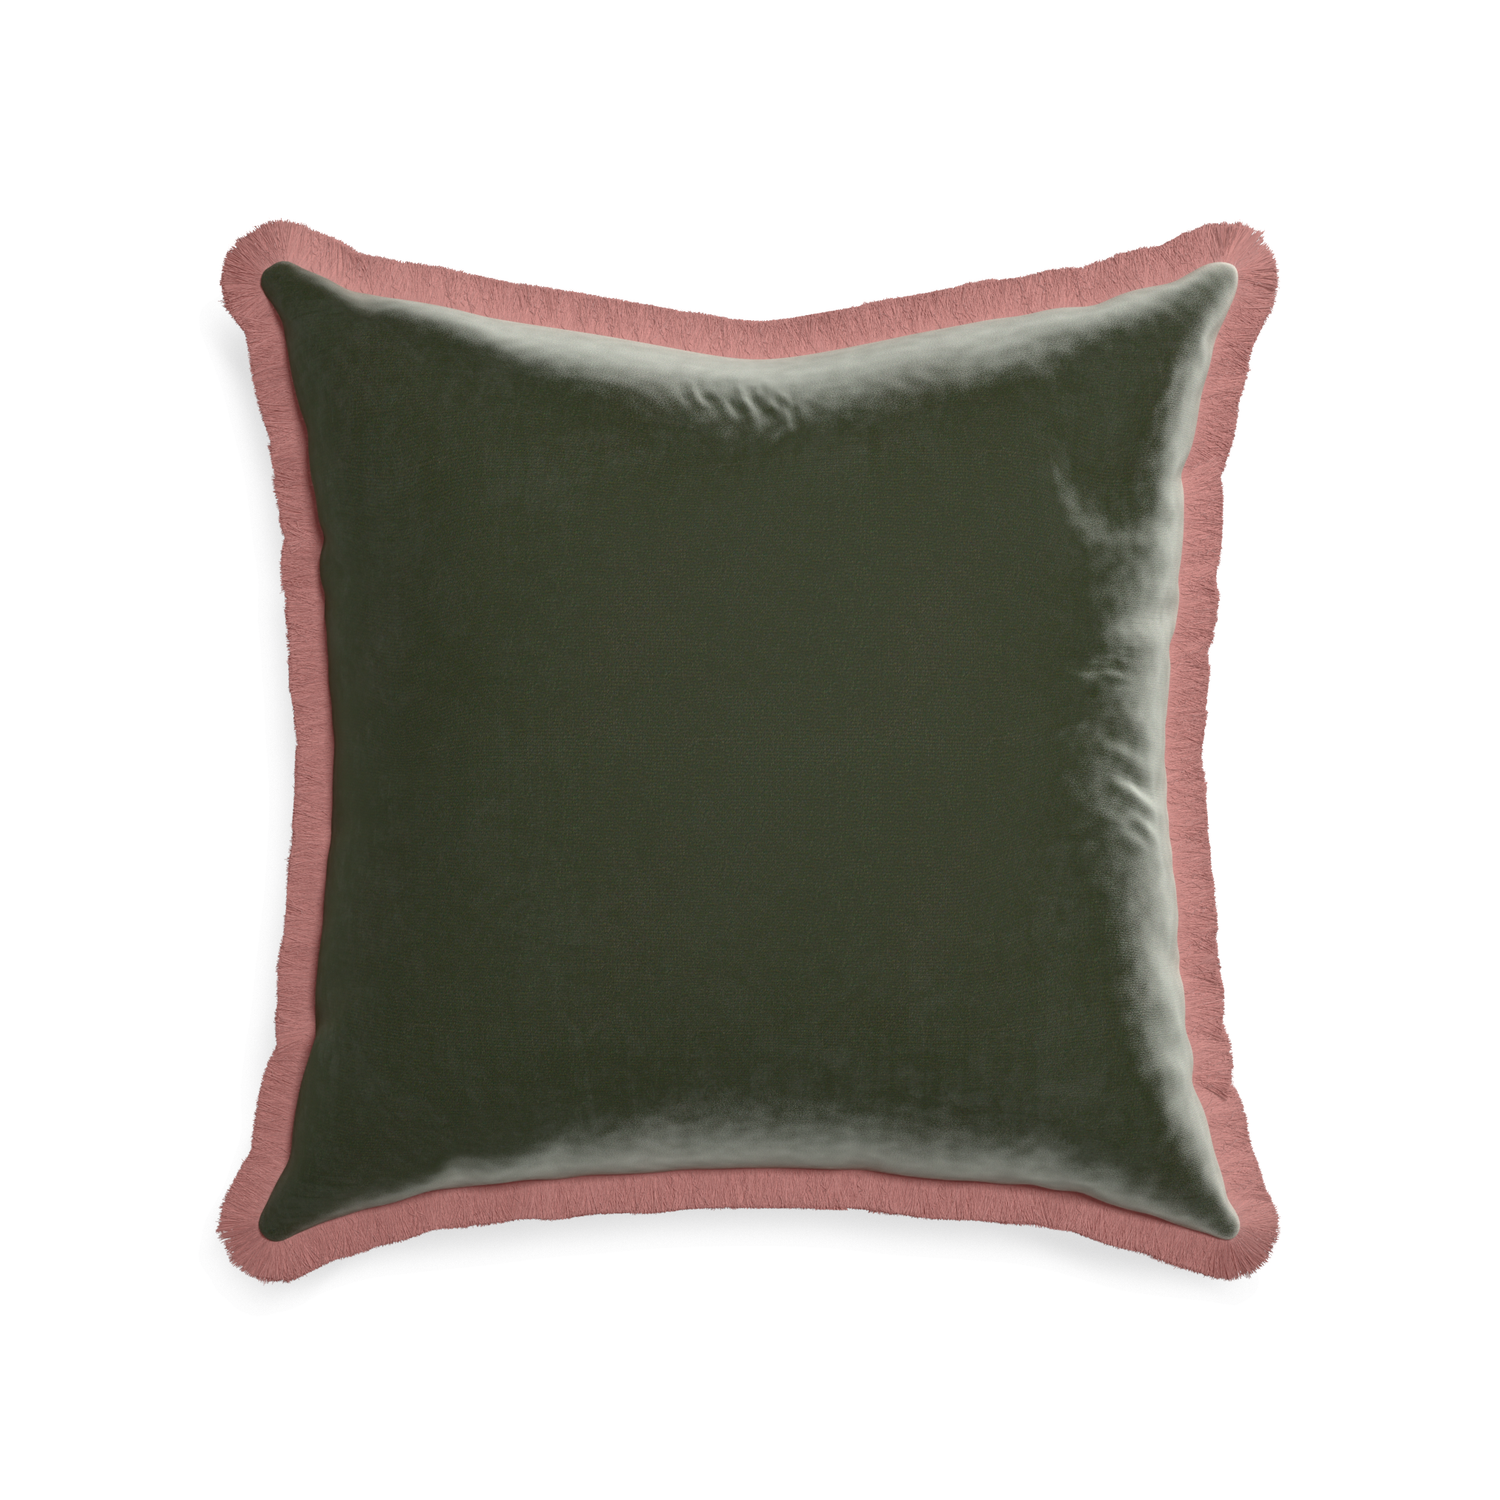 22-square fern velvet custom pillow with d fringe on white background